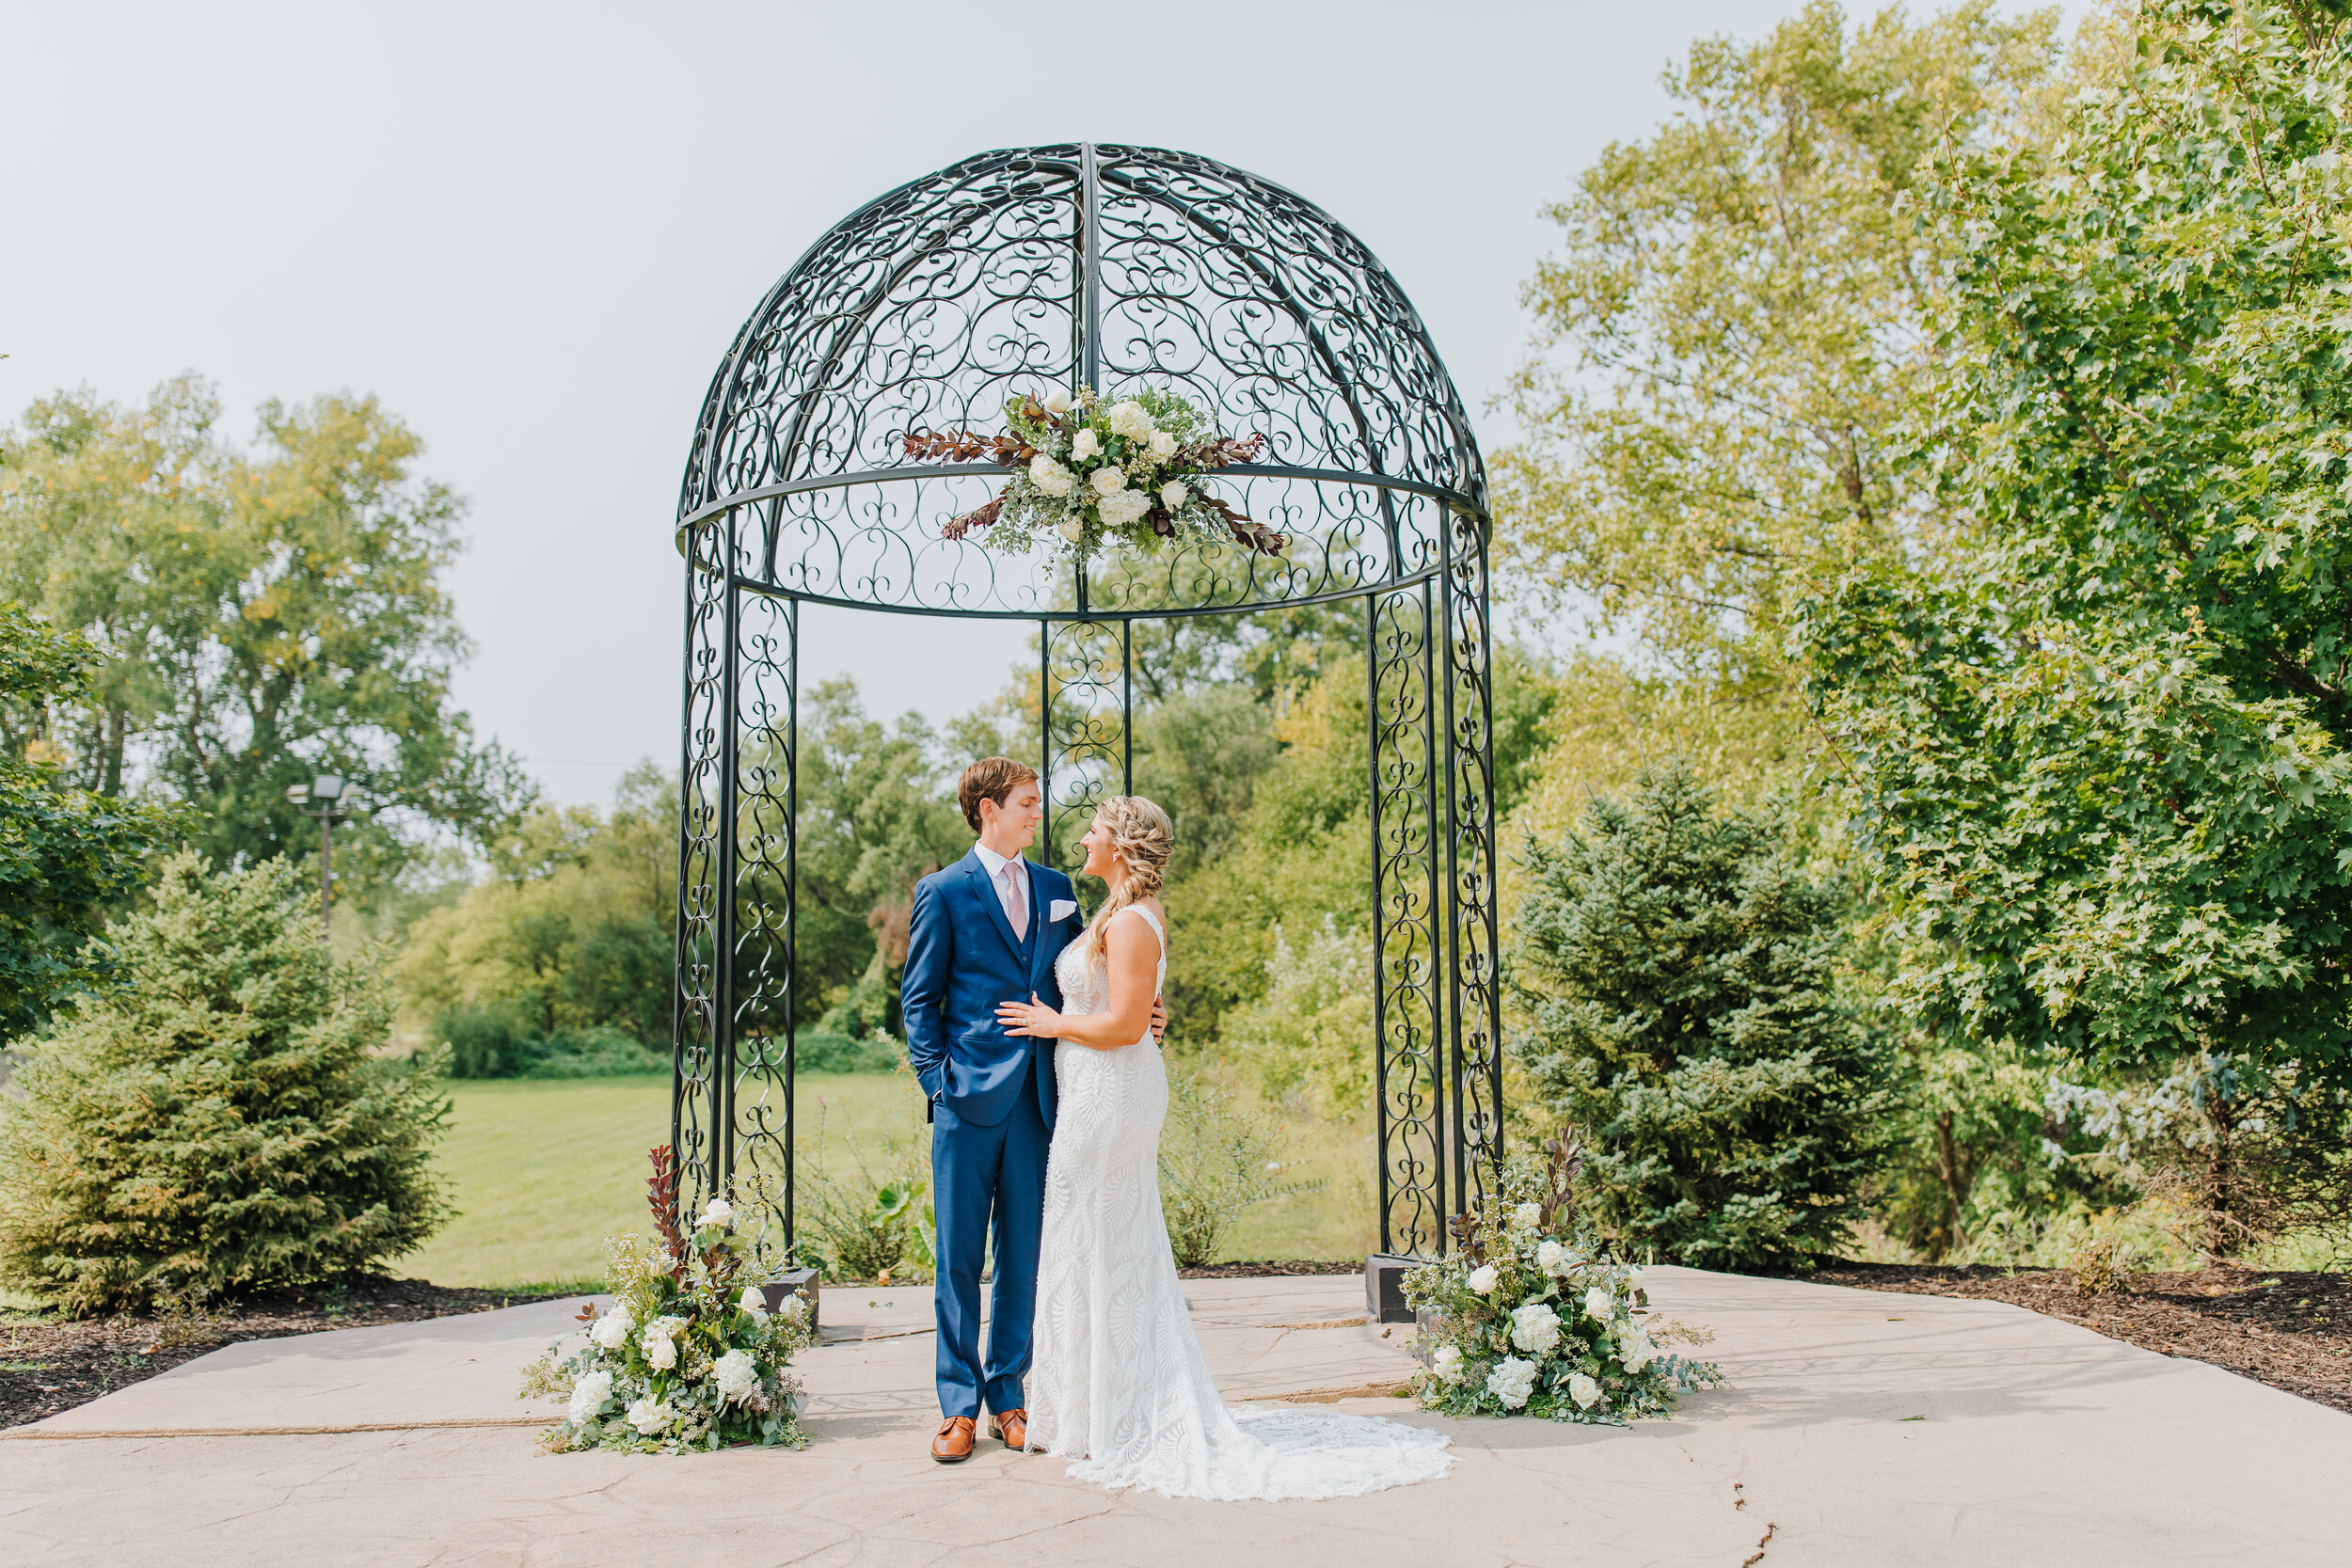 Ashton & Dan - Married - Nathaniel Jensen Photography - Omaha Nebraska Wedding Photographer-140.jpg